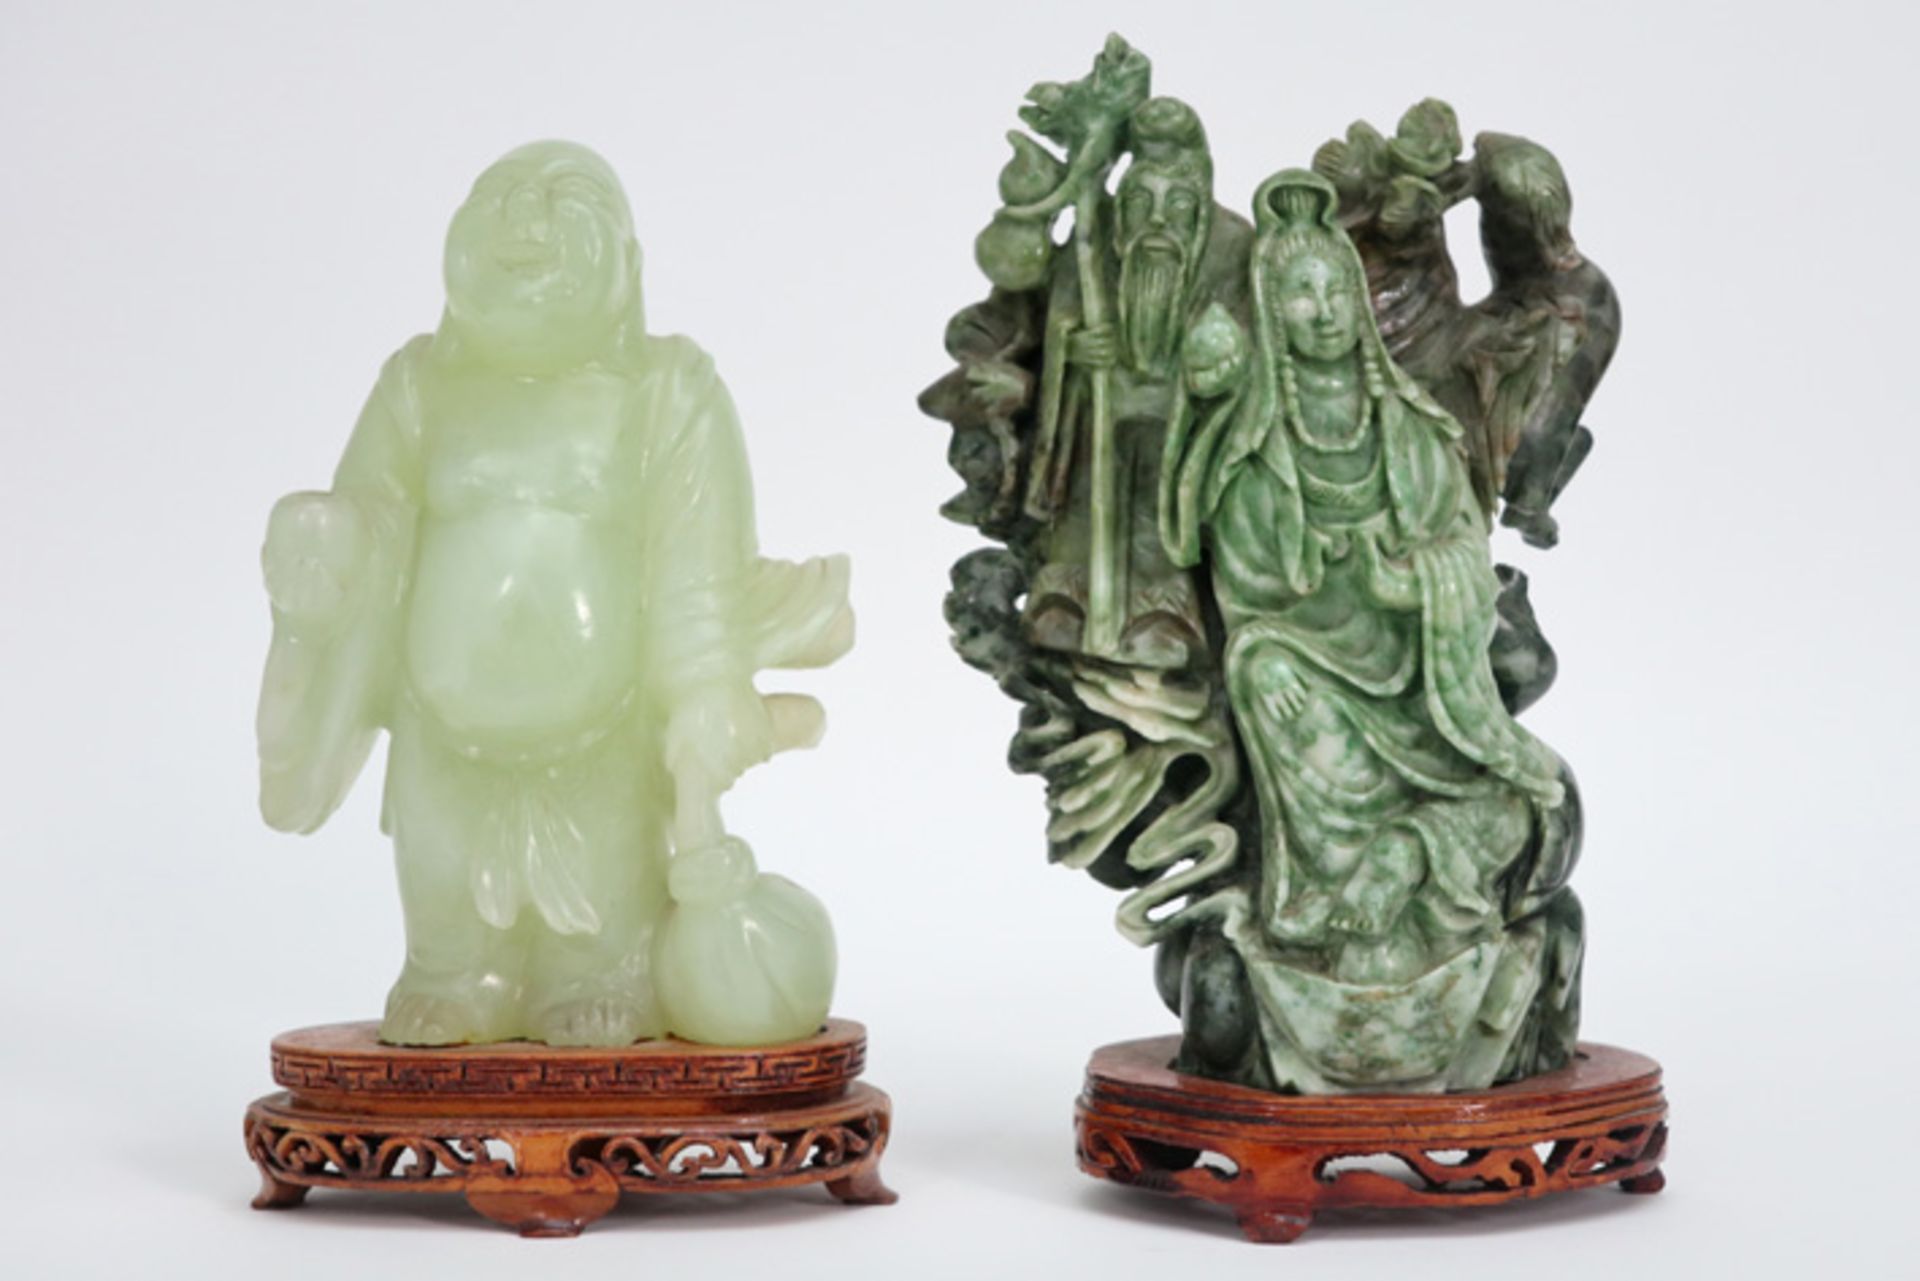 two Chinese stone sculptures || Lot van twee Chinese sculpturen in steen - hoogtes : 16,5 en 19,5 cm